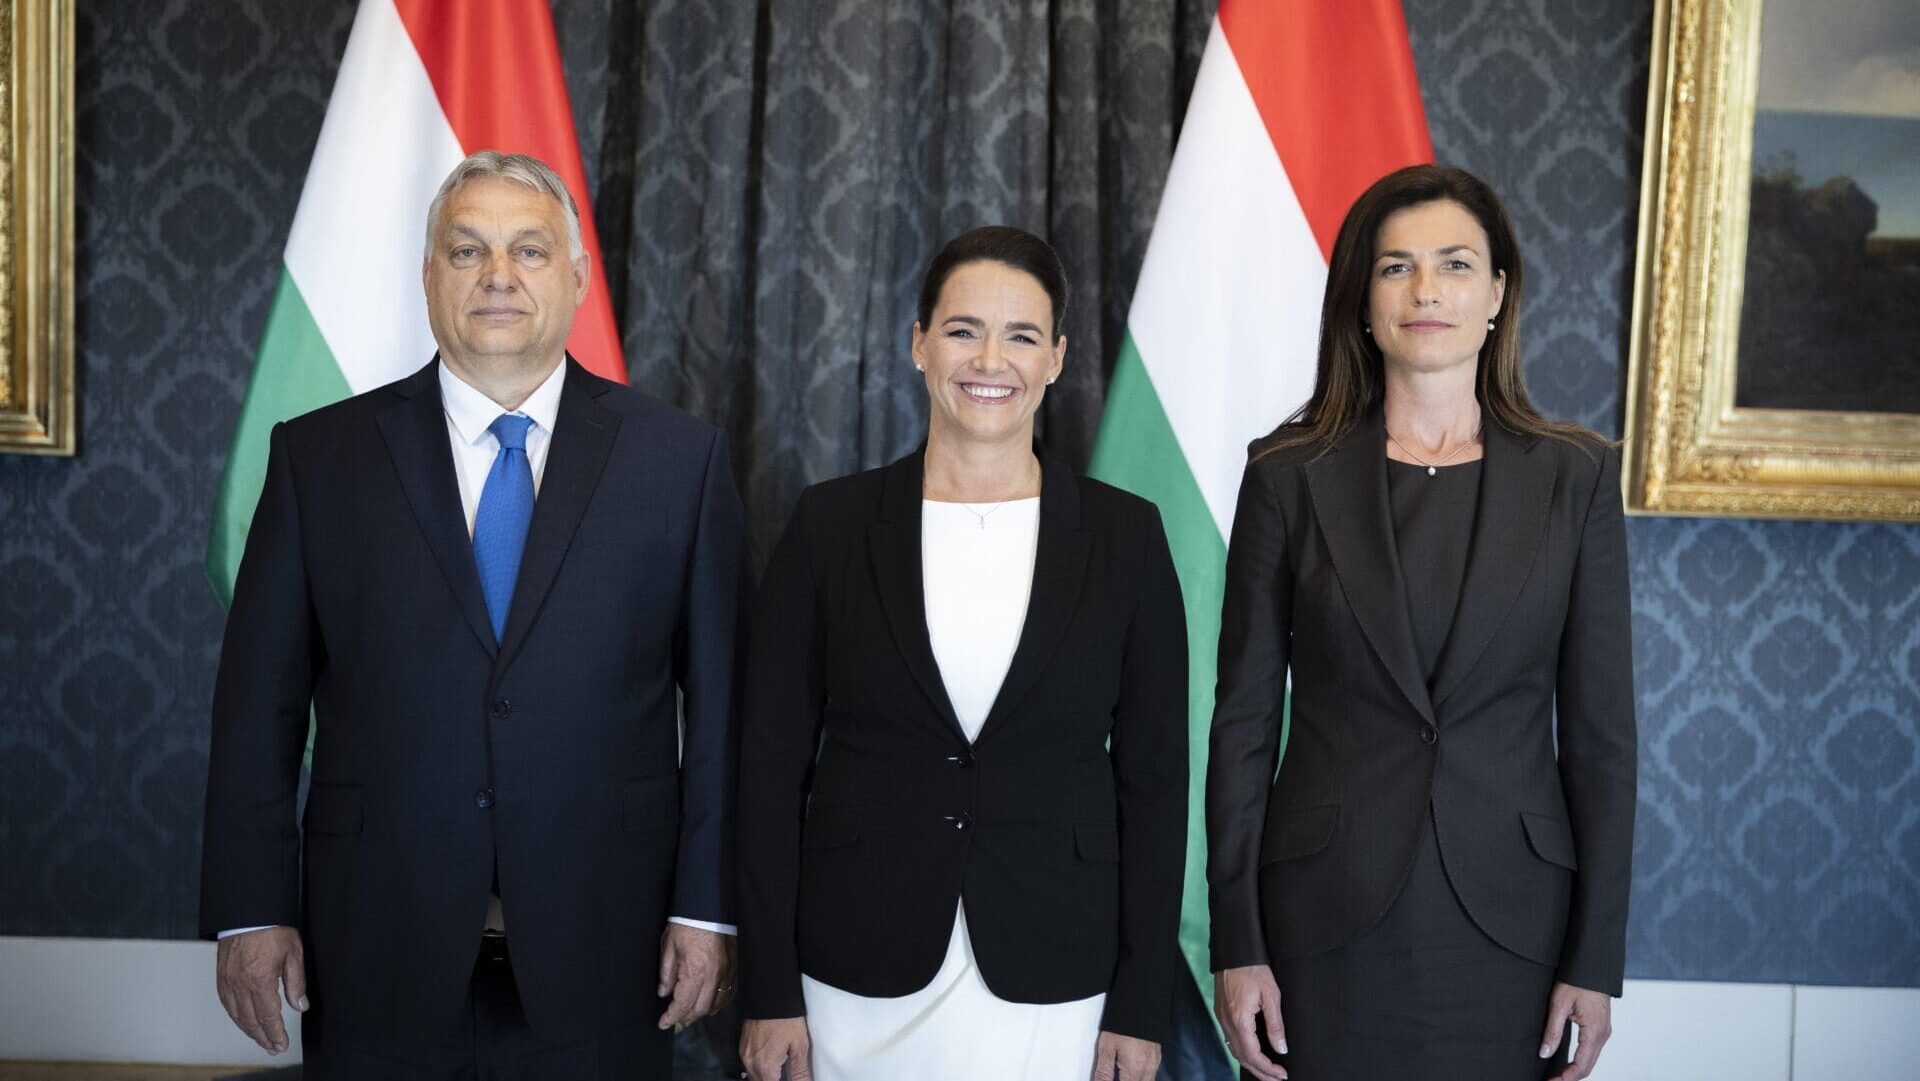 PM Viktor Orbán, President Katalin Novák, Justice Minister Judit Varga